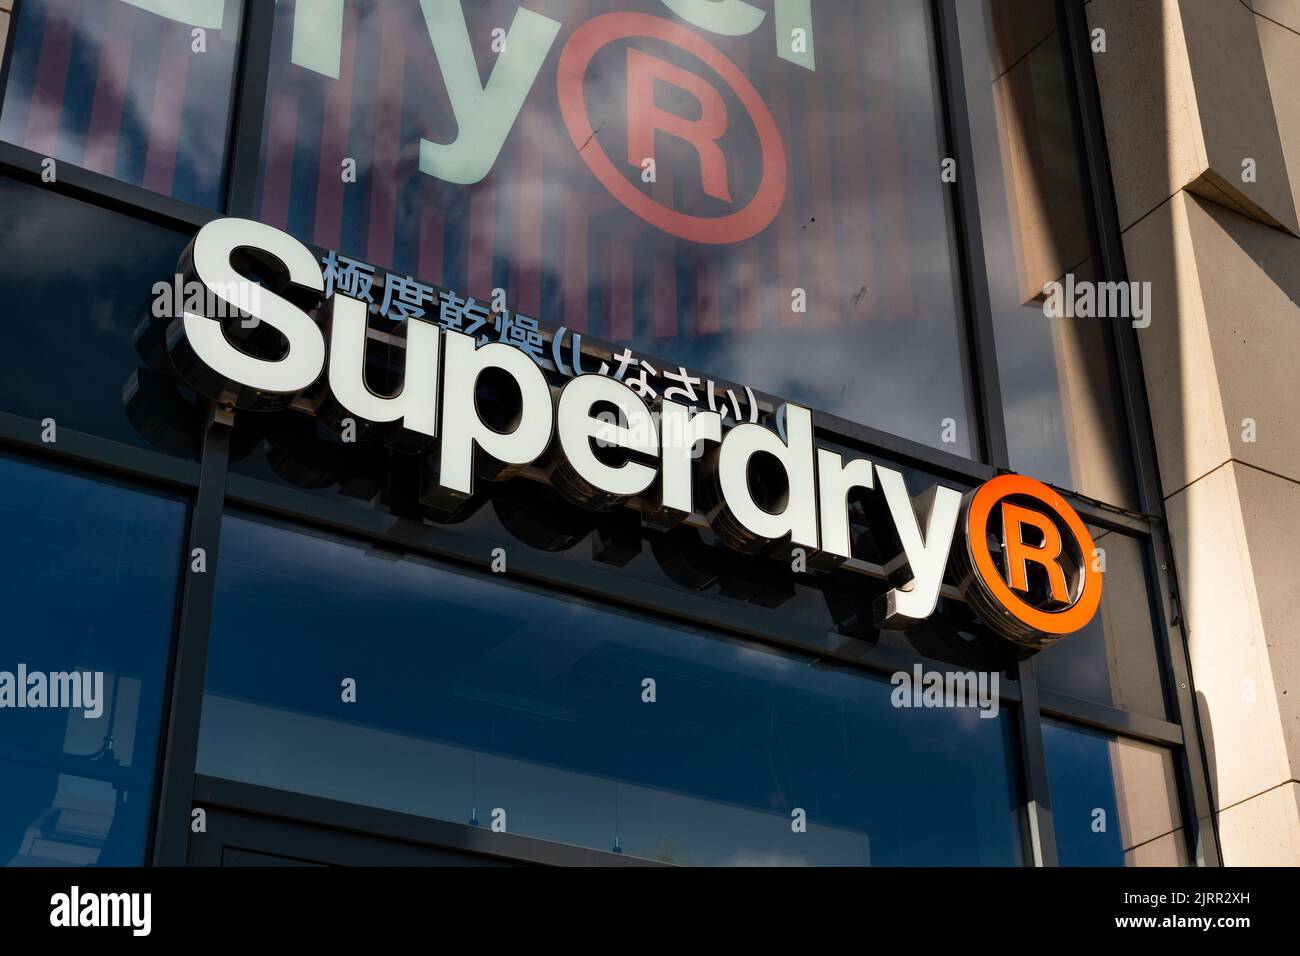 étiquette superdry Banque de photographies et d'images à haute résolution -  Alamy